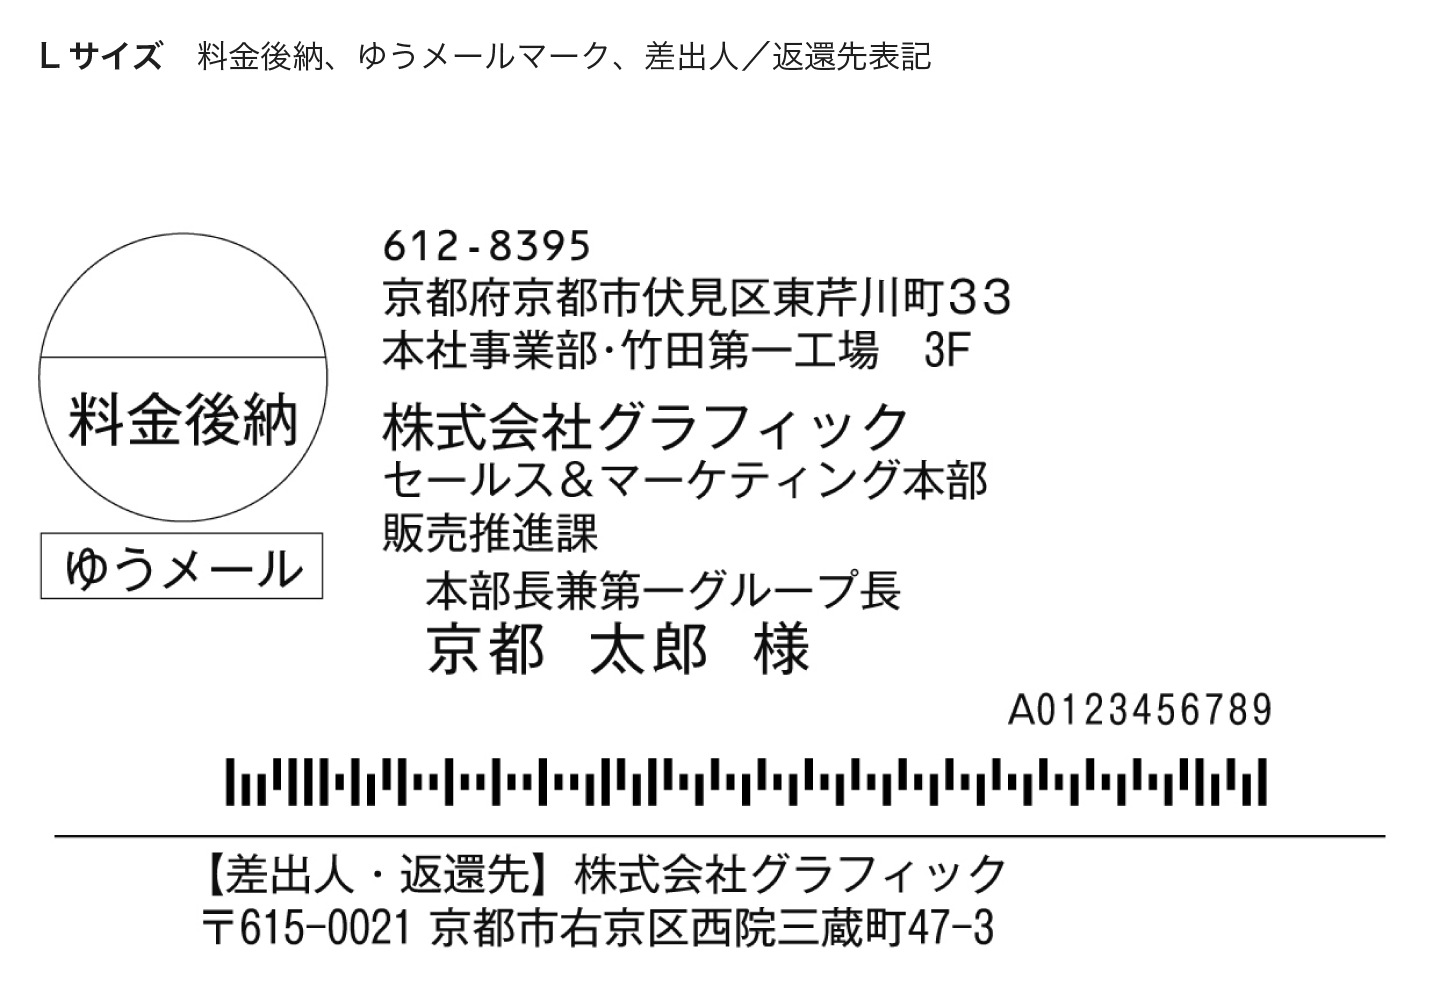 タックシール宛名印刷（印字・インクジェット） - ネット印刷は【印刷 